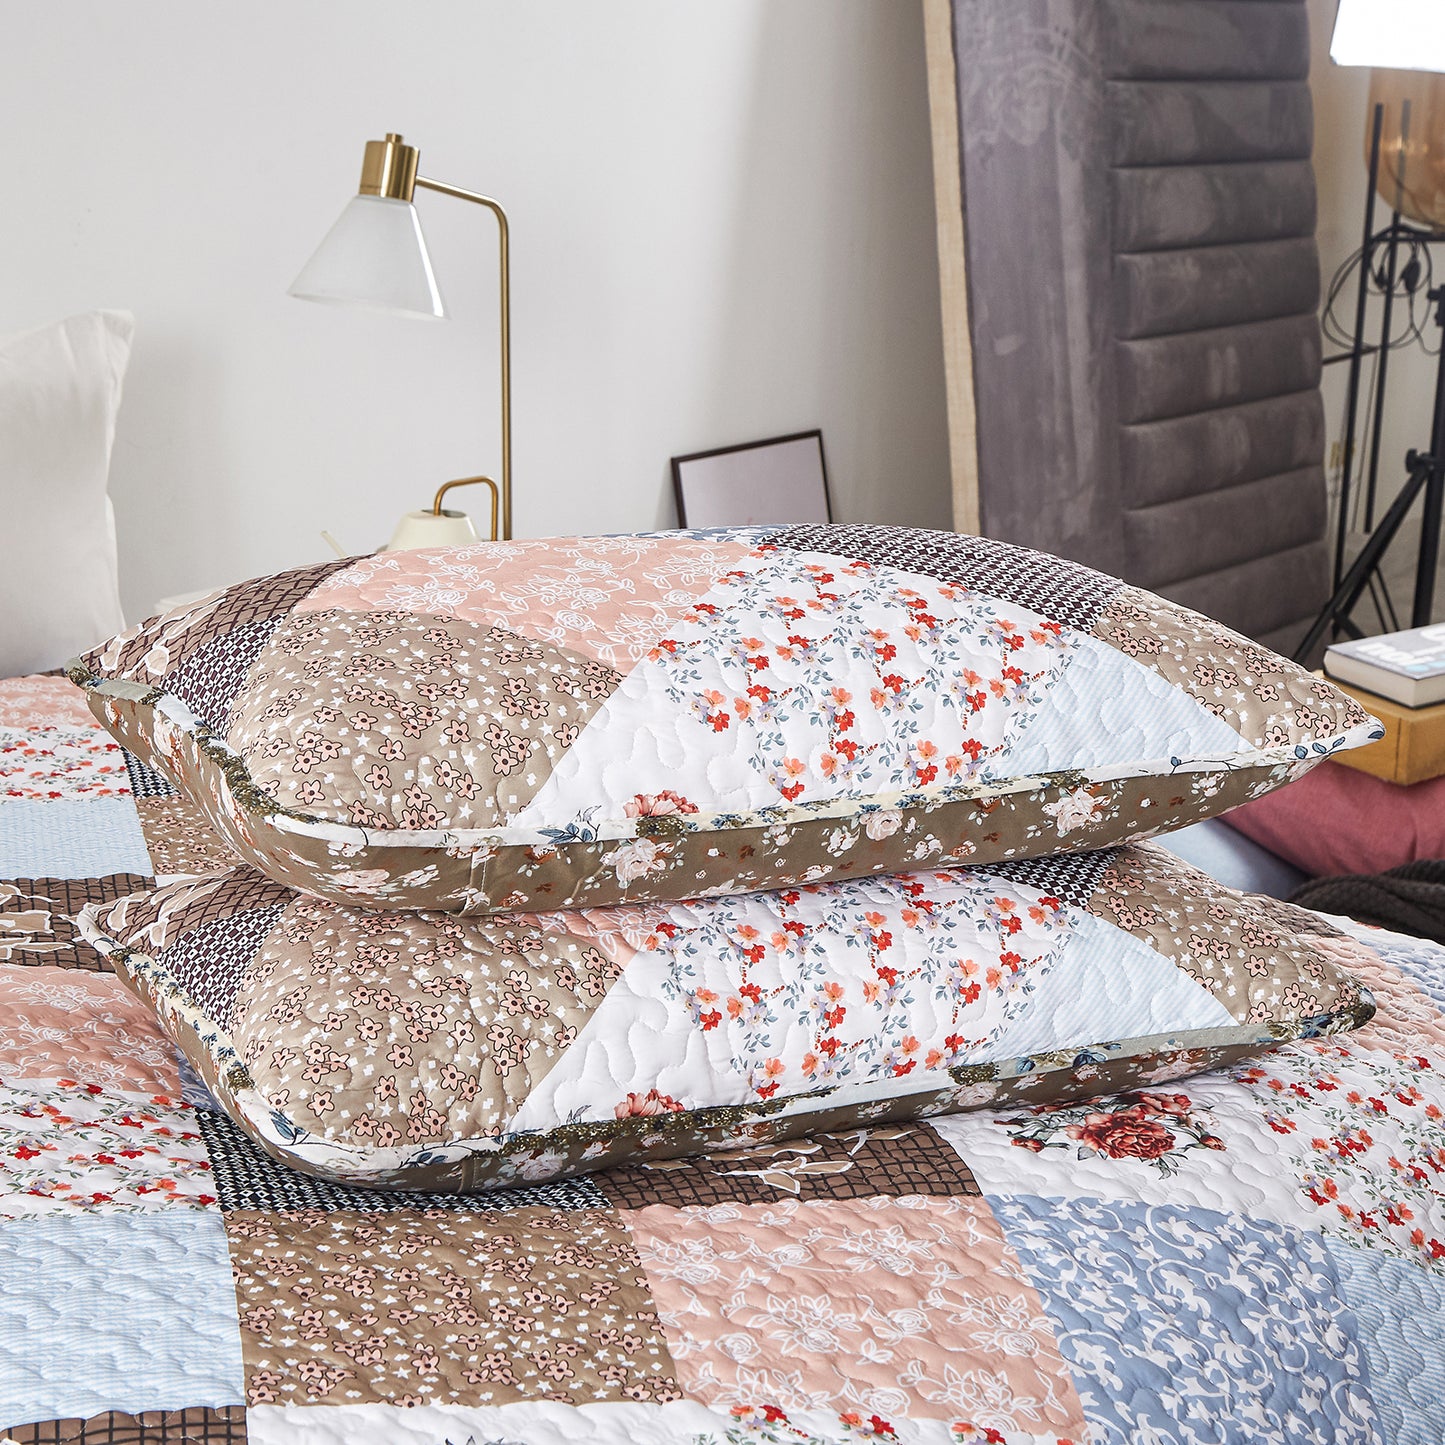 Plain Decoration Bohemian Style 3 Pieces Quilt Set with 2 Pillowcases